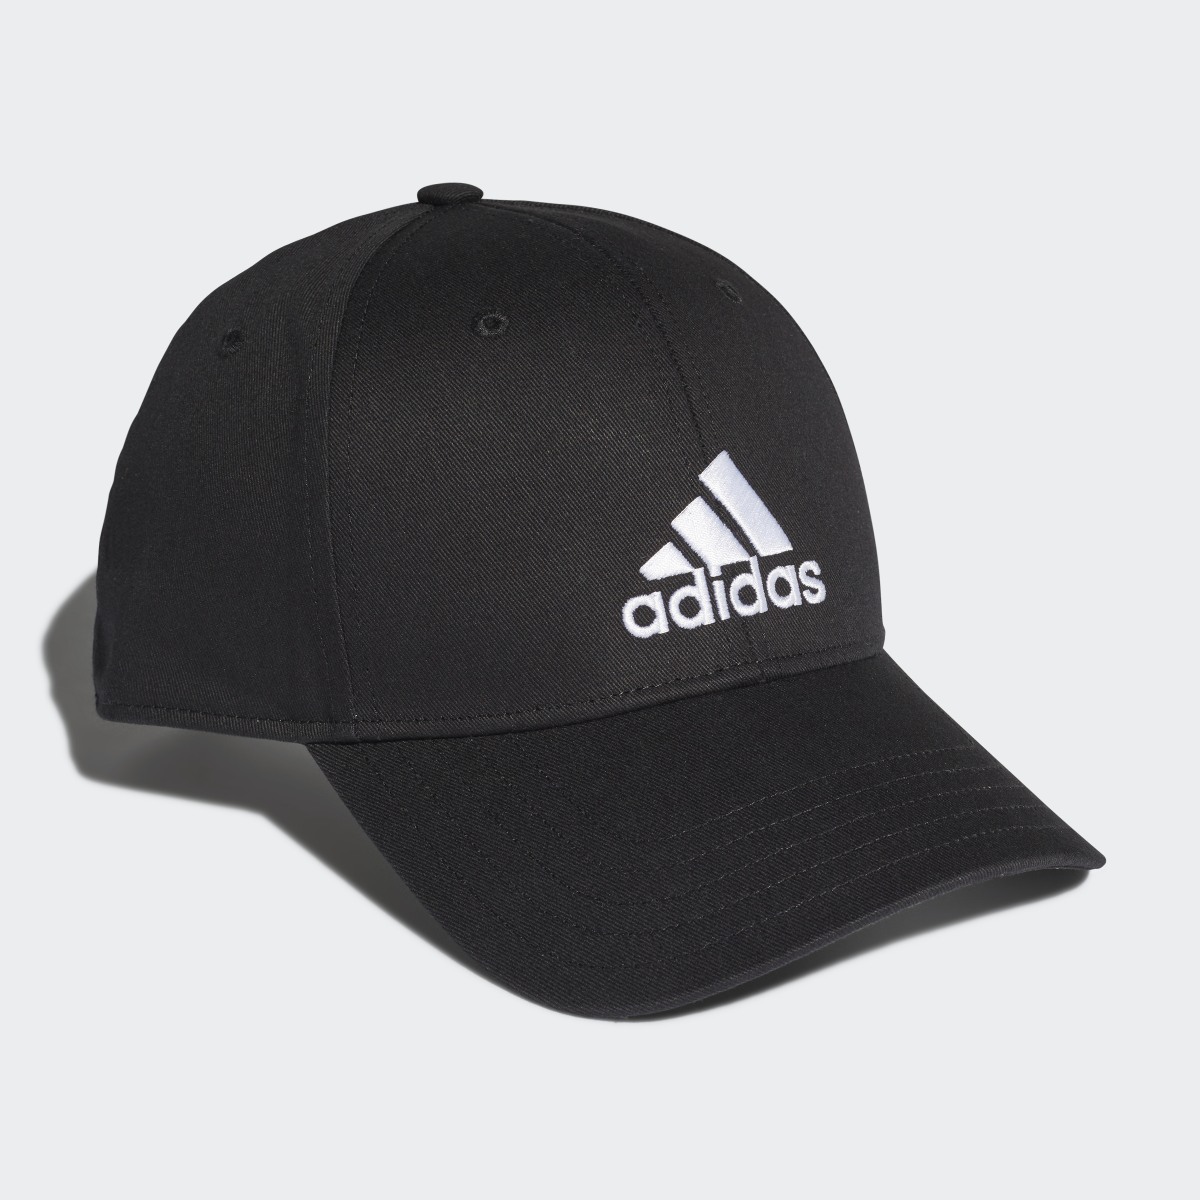 Adidas Baseball Cap. 4